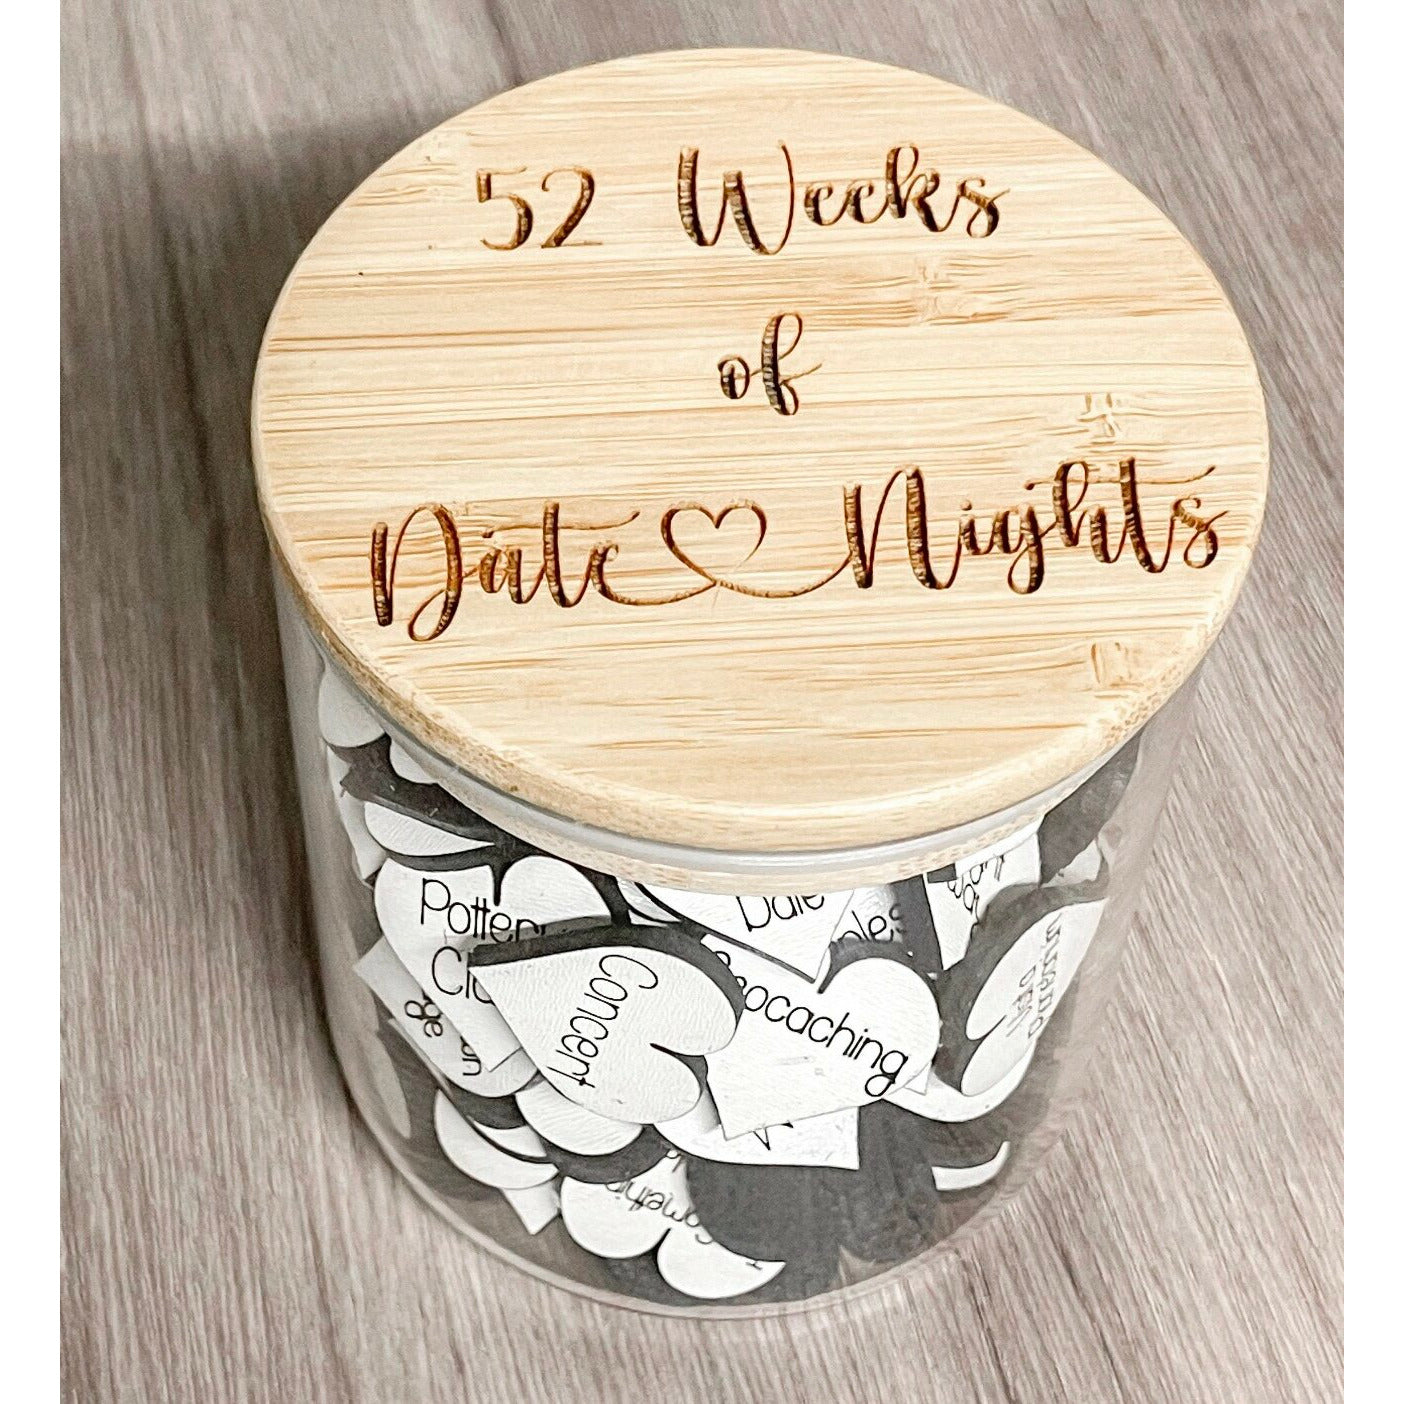 52 Weeks of Date Nights Jar